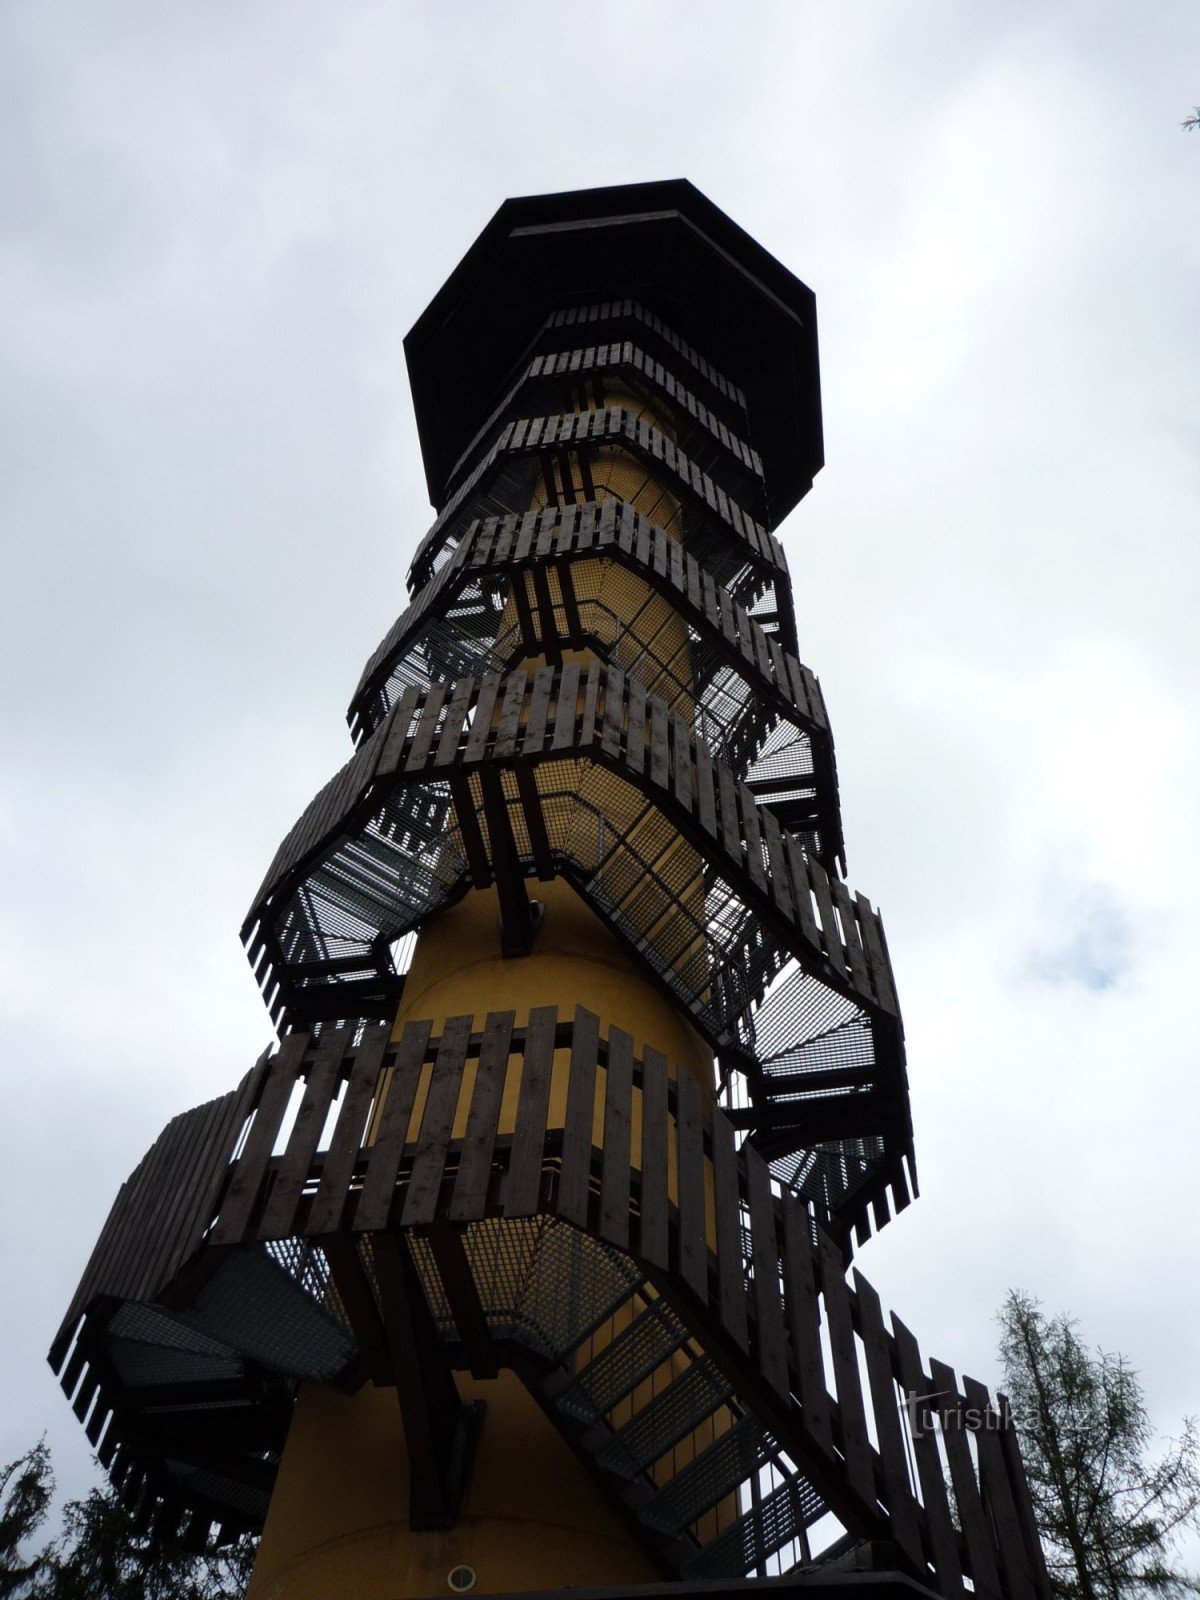 Drahoušek – torre de vigia perto de Osečany (PB)